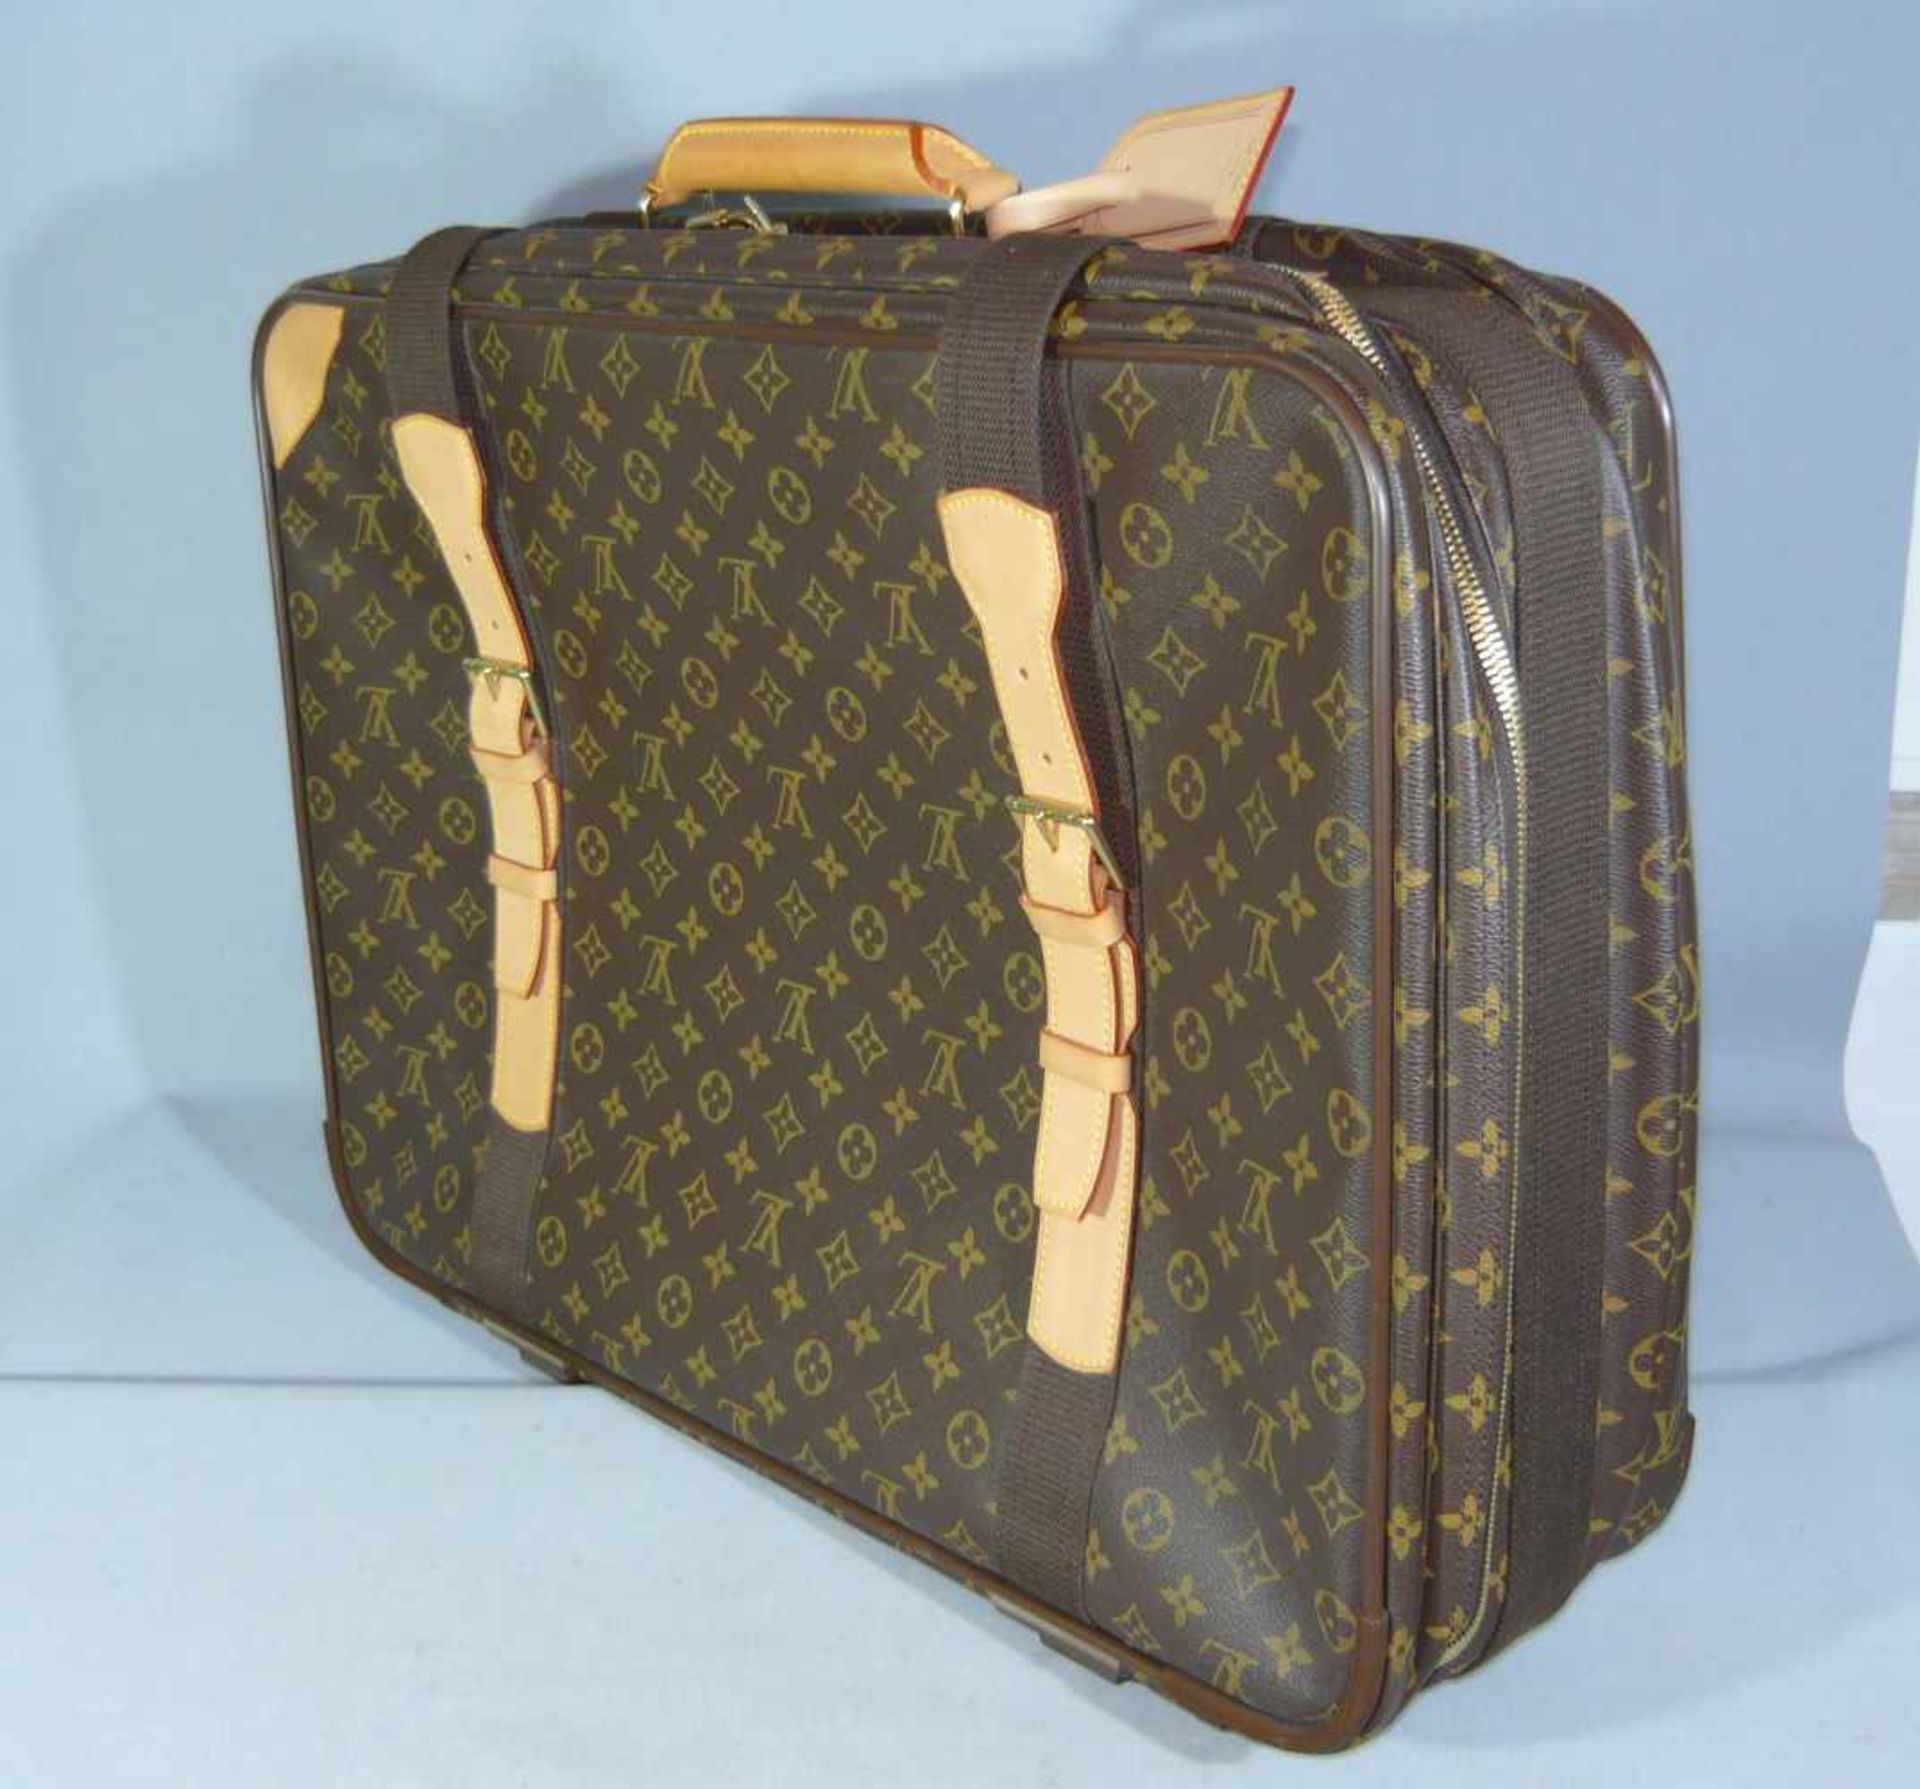 Louis Vuitton. Reisetasche. Einwandfreier Zustand, wie neu. Maße ca. 14x44x60 cm.Louis Vuitton. - Image 2 of 4